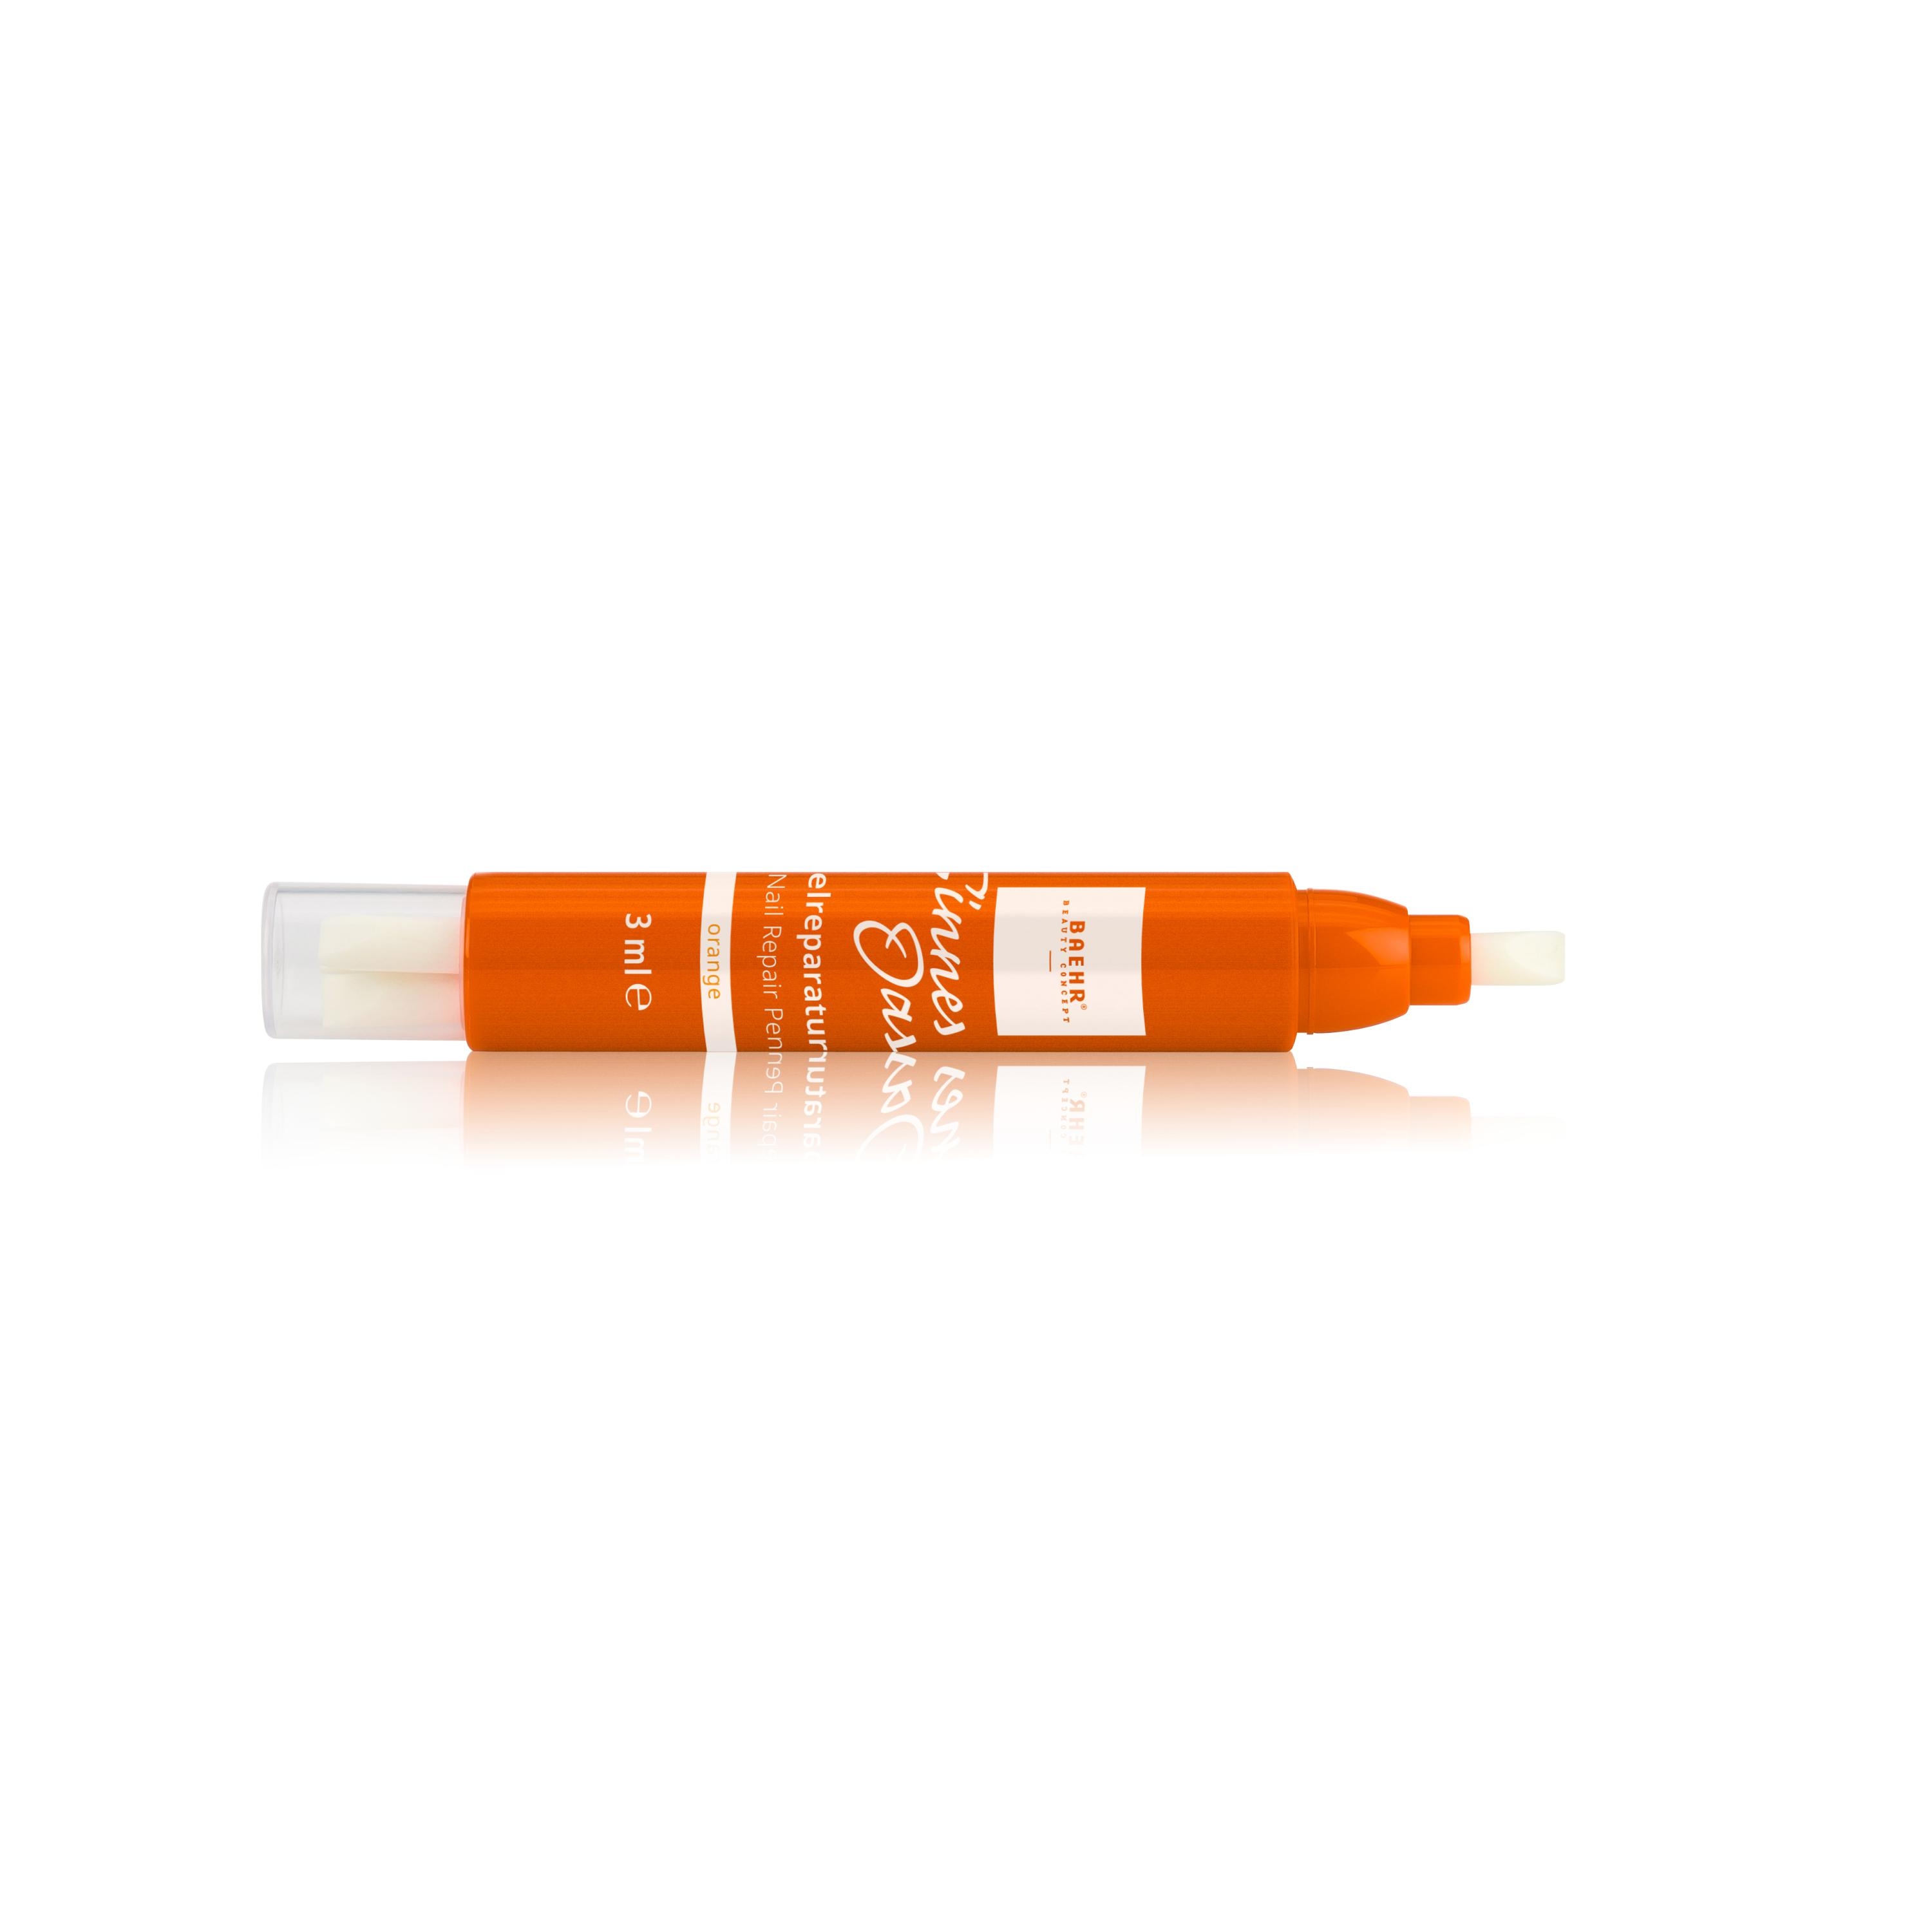 BAEHR BEAUTY CONCEPT Sinnes Oase Nail Repair Pen orange, 3 Ersatzspitzen 3 ml